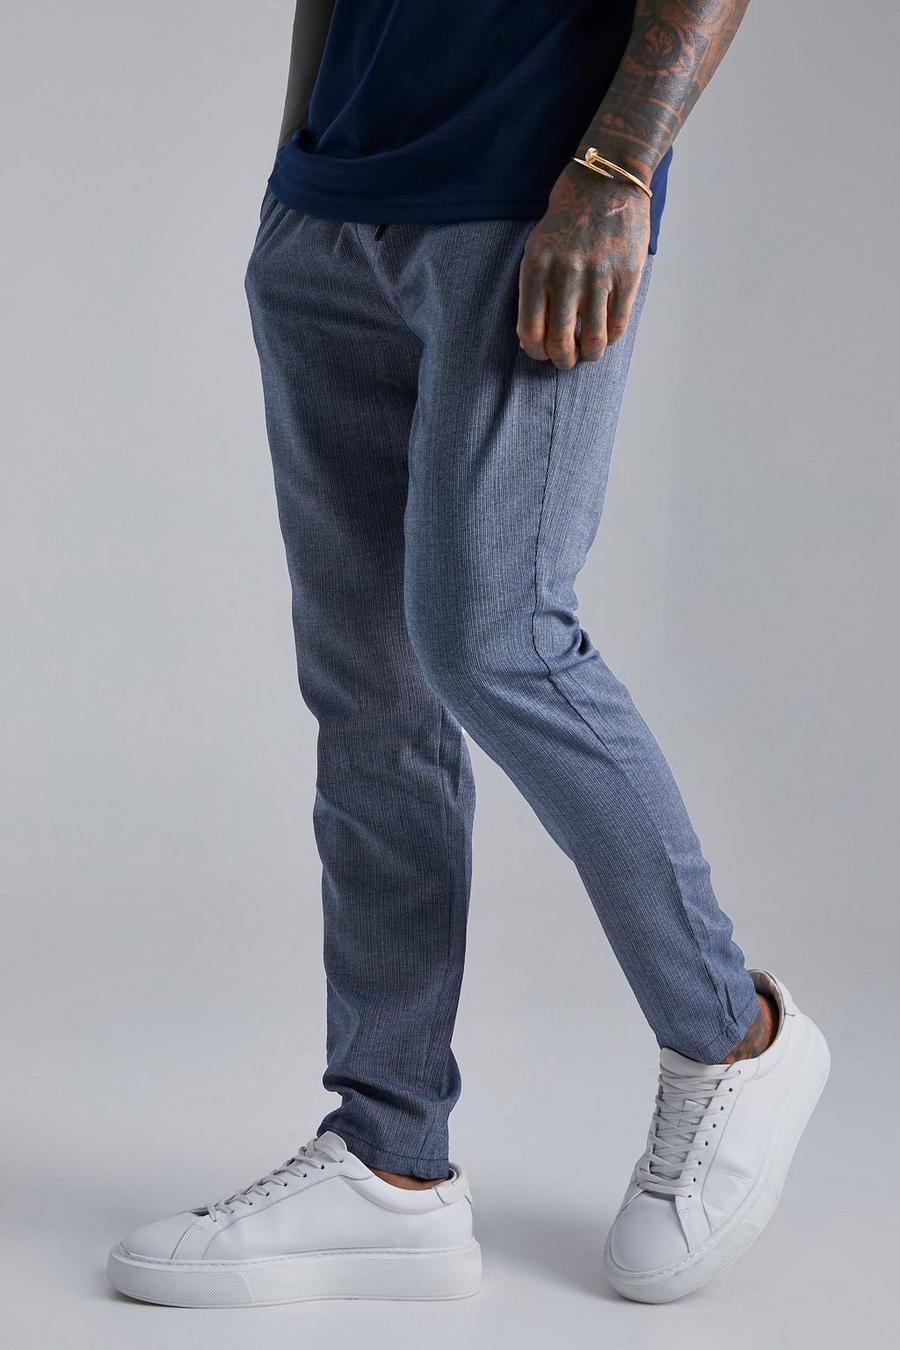 Pantaloni elasticizzati a righe verticali, Navy azul marino